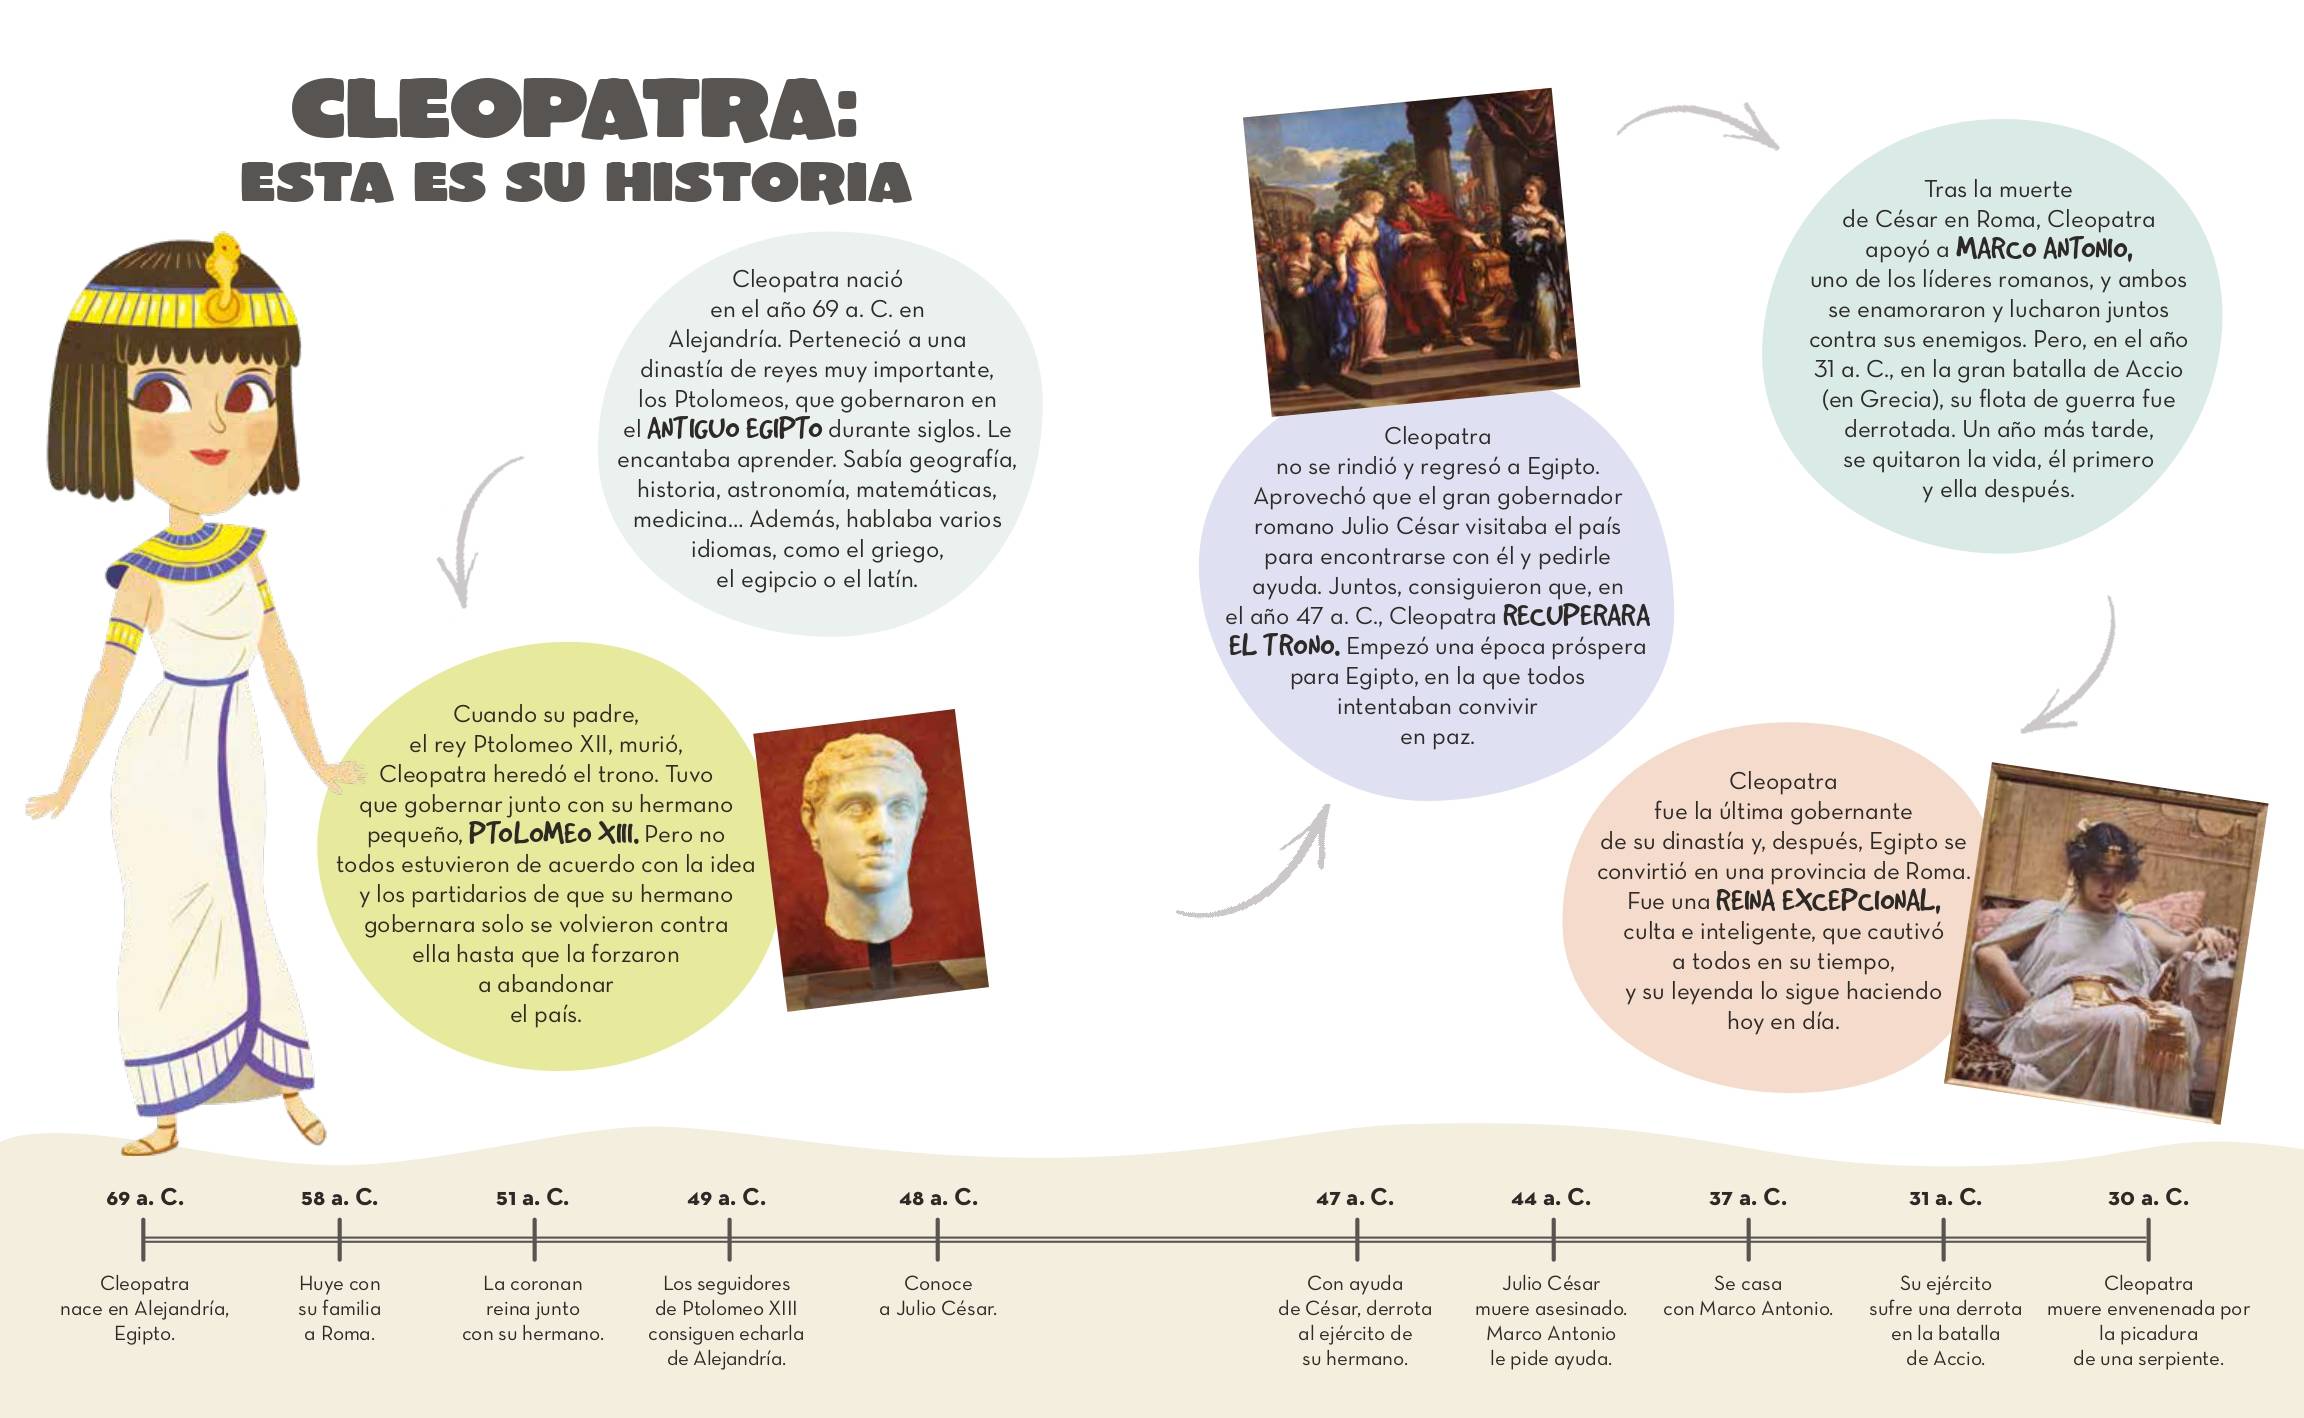 Cleópatra: biografia, legado, curiosidades, resumo - Escola Kids